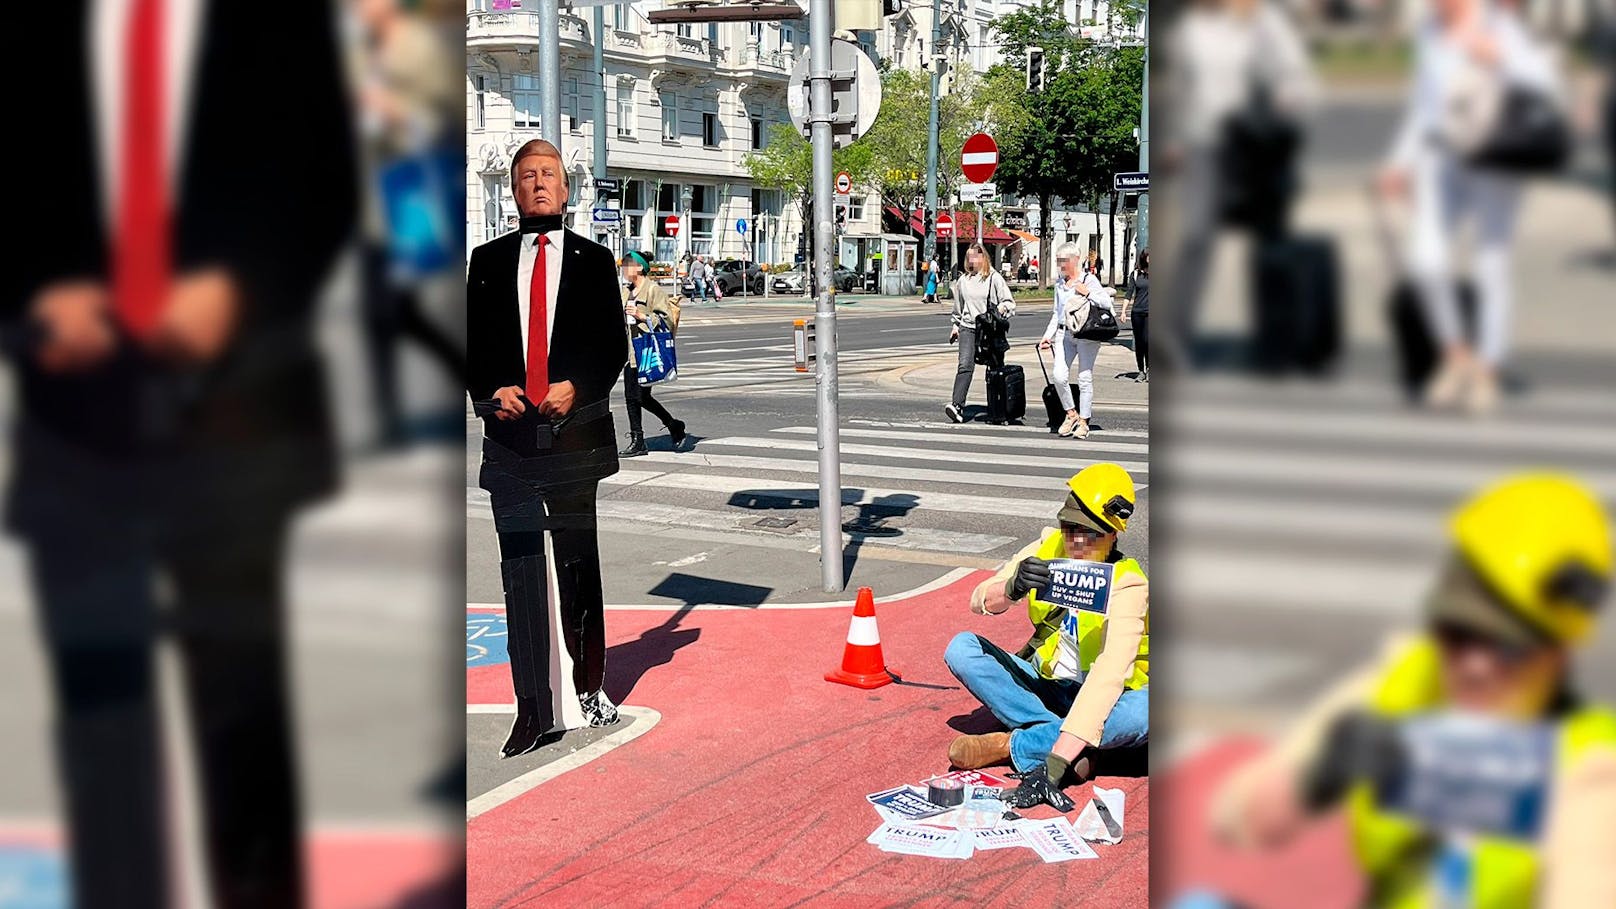 Klebe-Aktion – Trump-Fan blockiert Fahrradweg in Wien